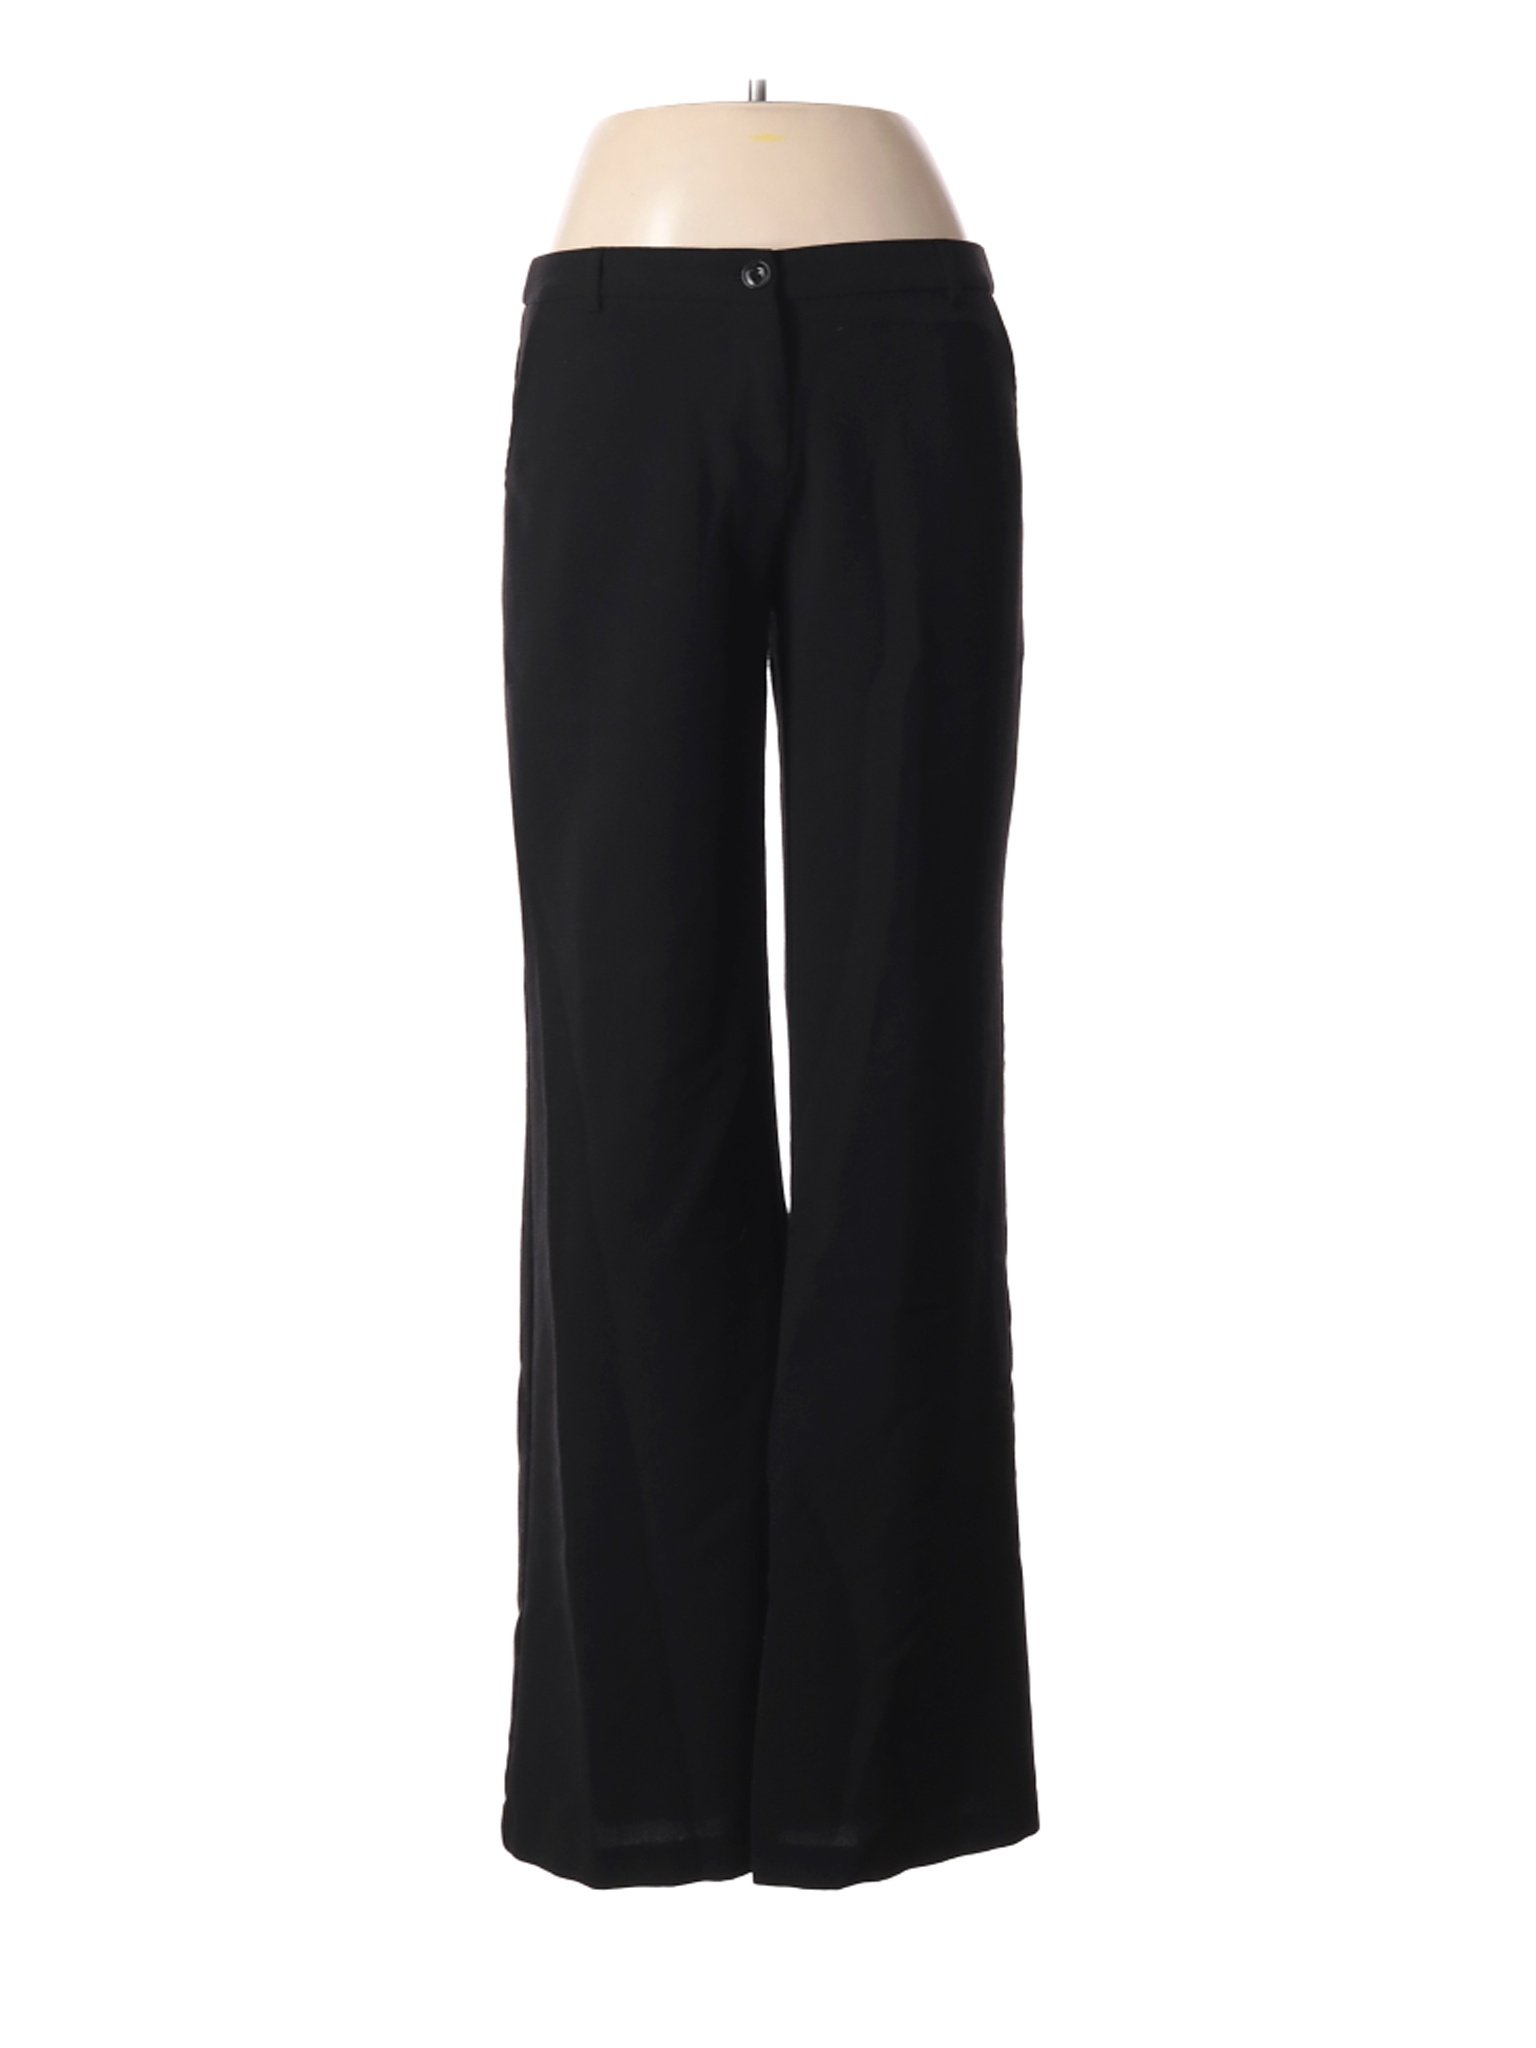 Papaya Women Black Dress Pants M | eBay